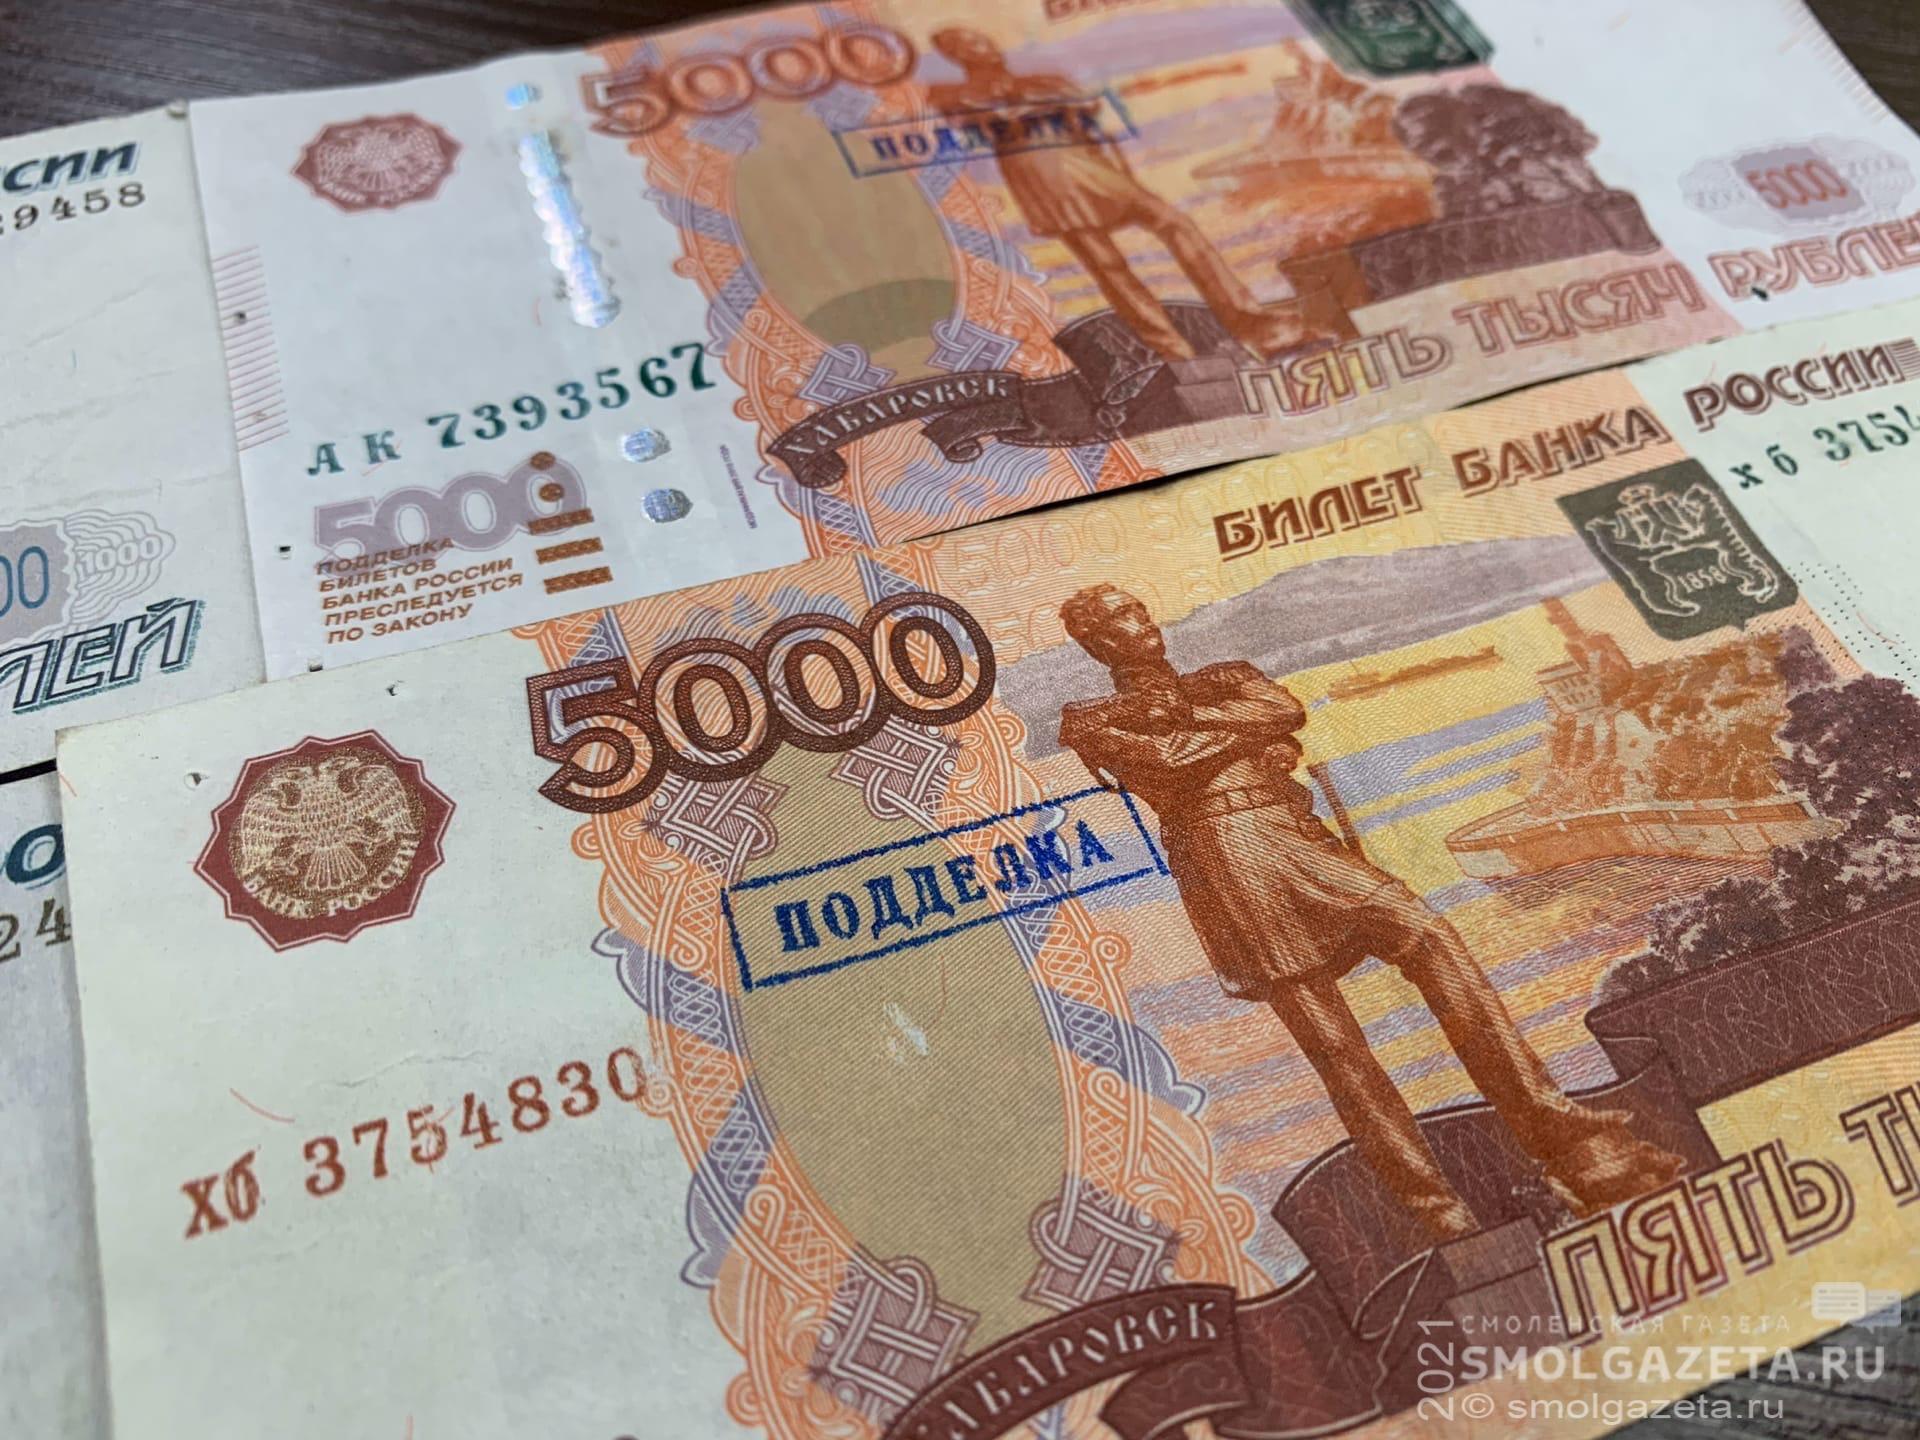 В Смоленске обнаружили две фальшивые 5-тысячные купюры